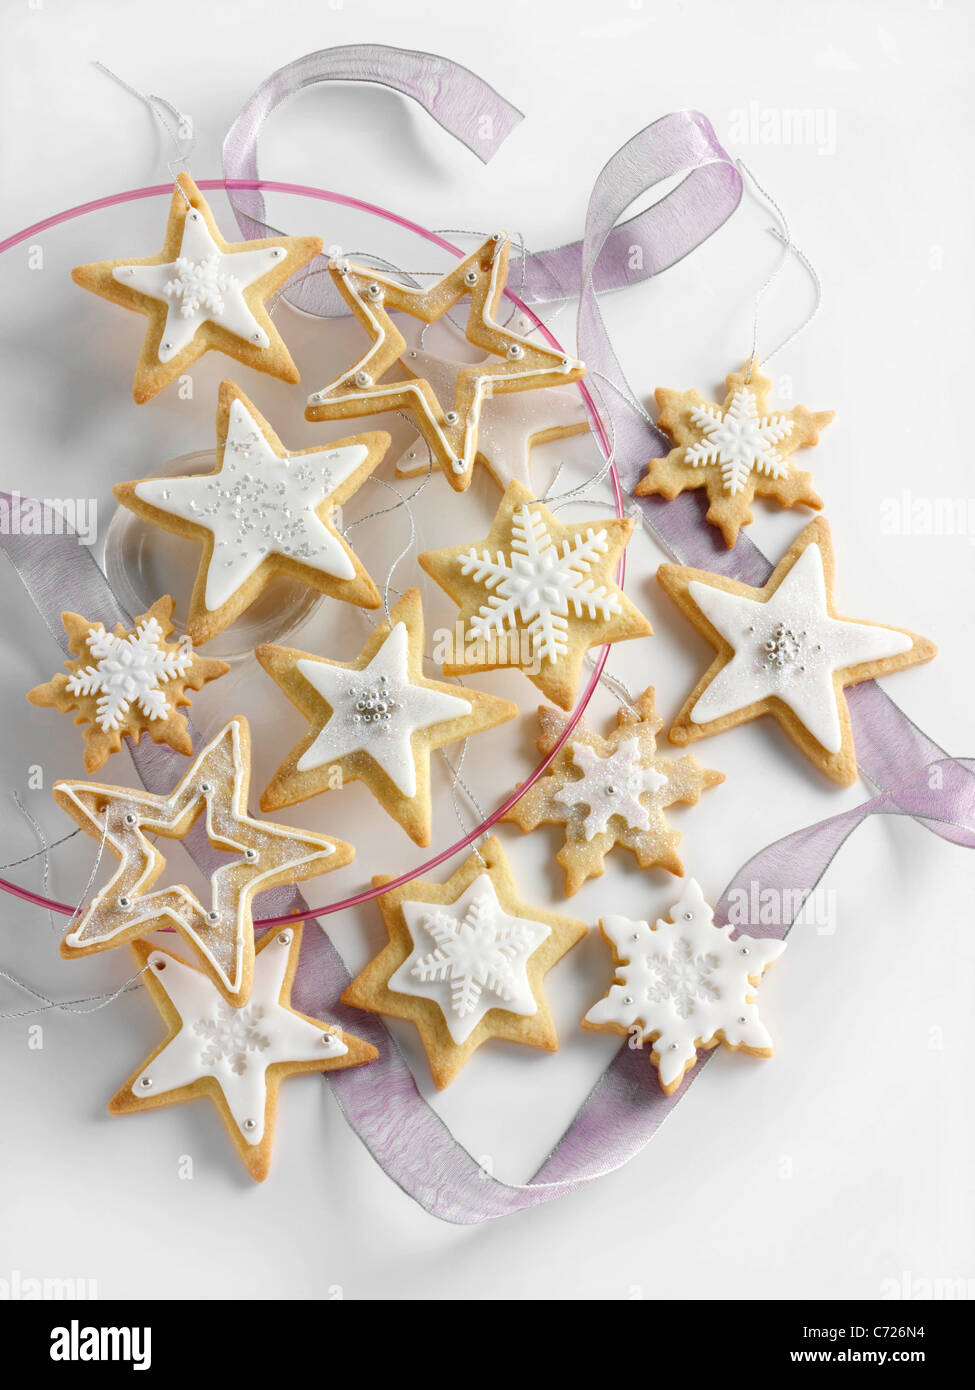 Biscuits de Noël glacé en forme d'étoile Banque D'Images